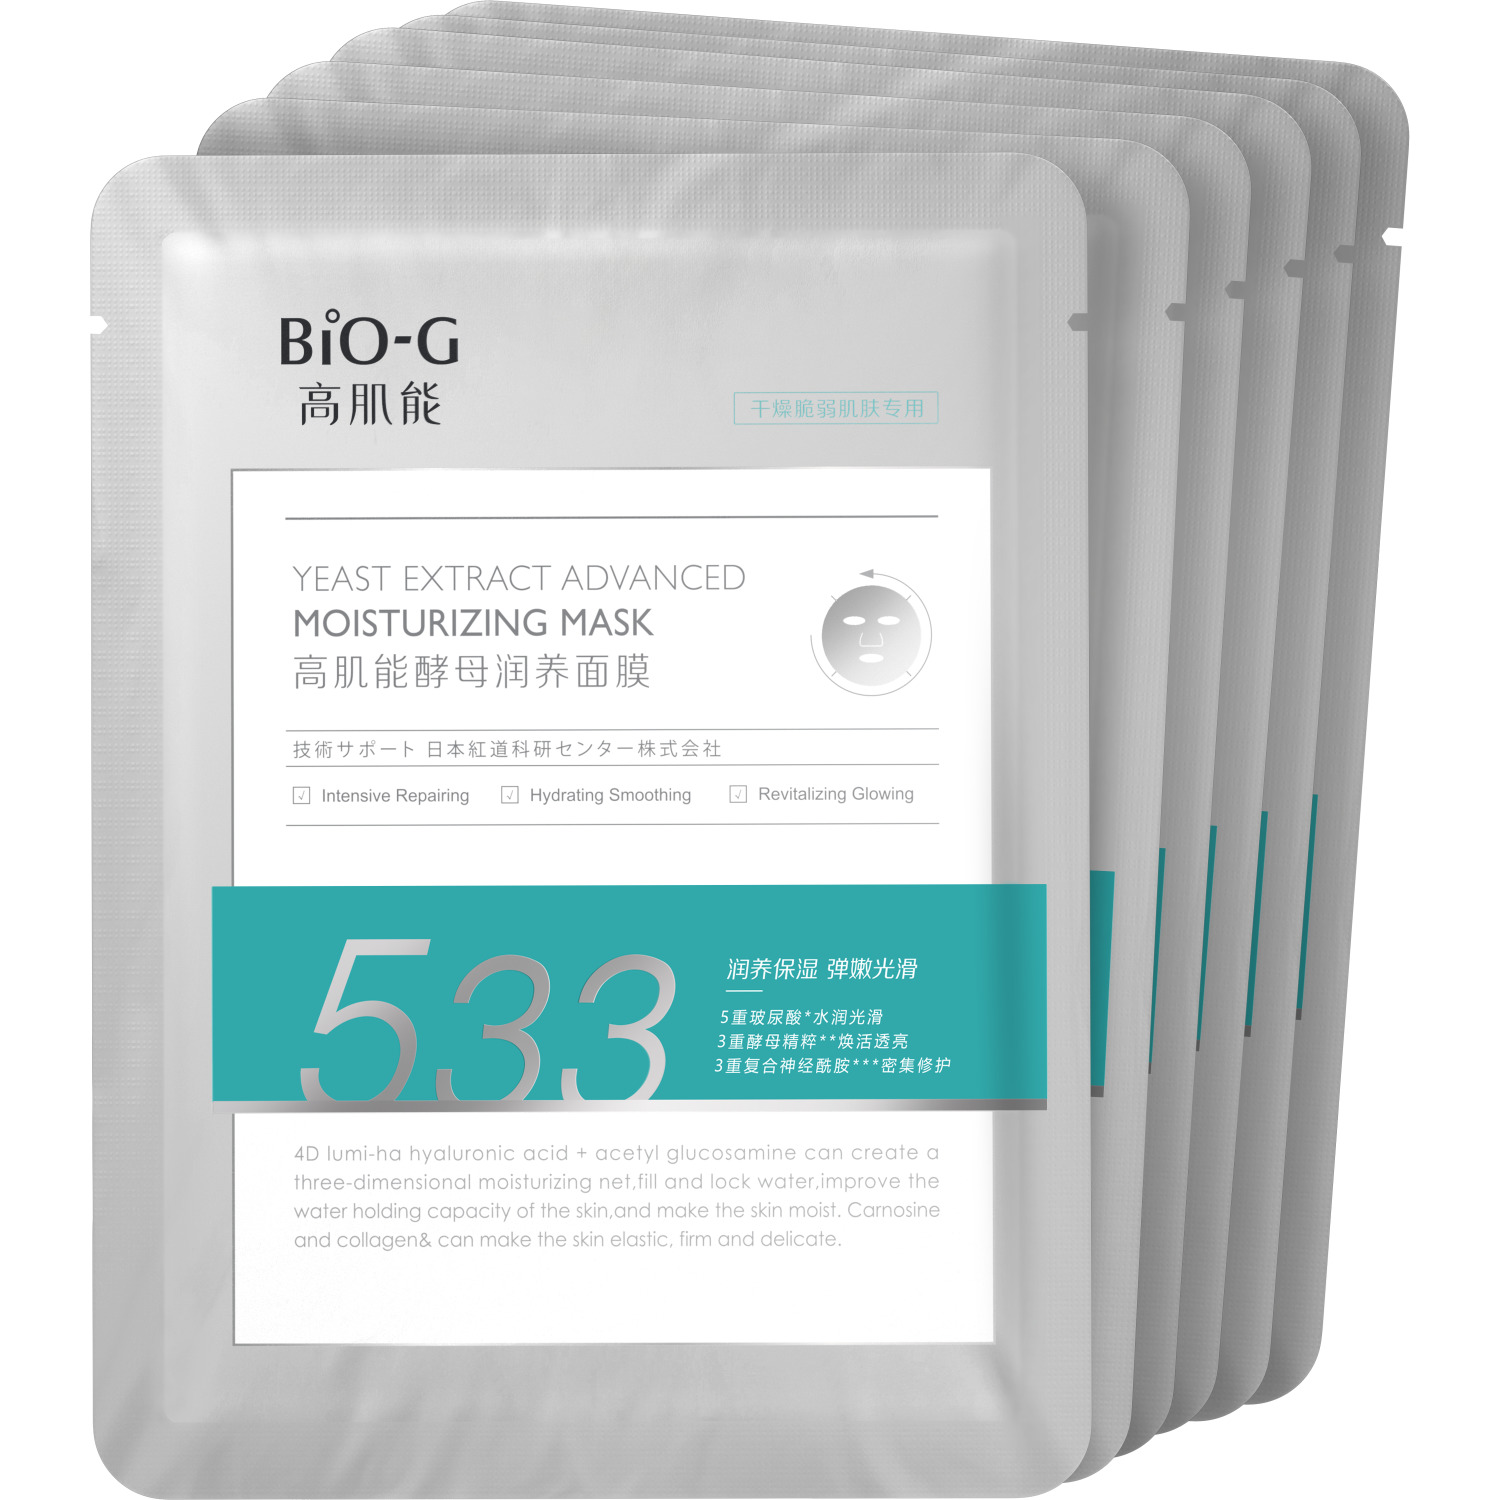 Набор тканевых масок Bio-G с экстрактом дрожжей восстанавливающие, увлажняющие, омолаживающие 6 шт по 25 мл